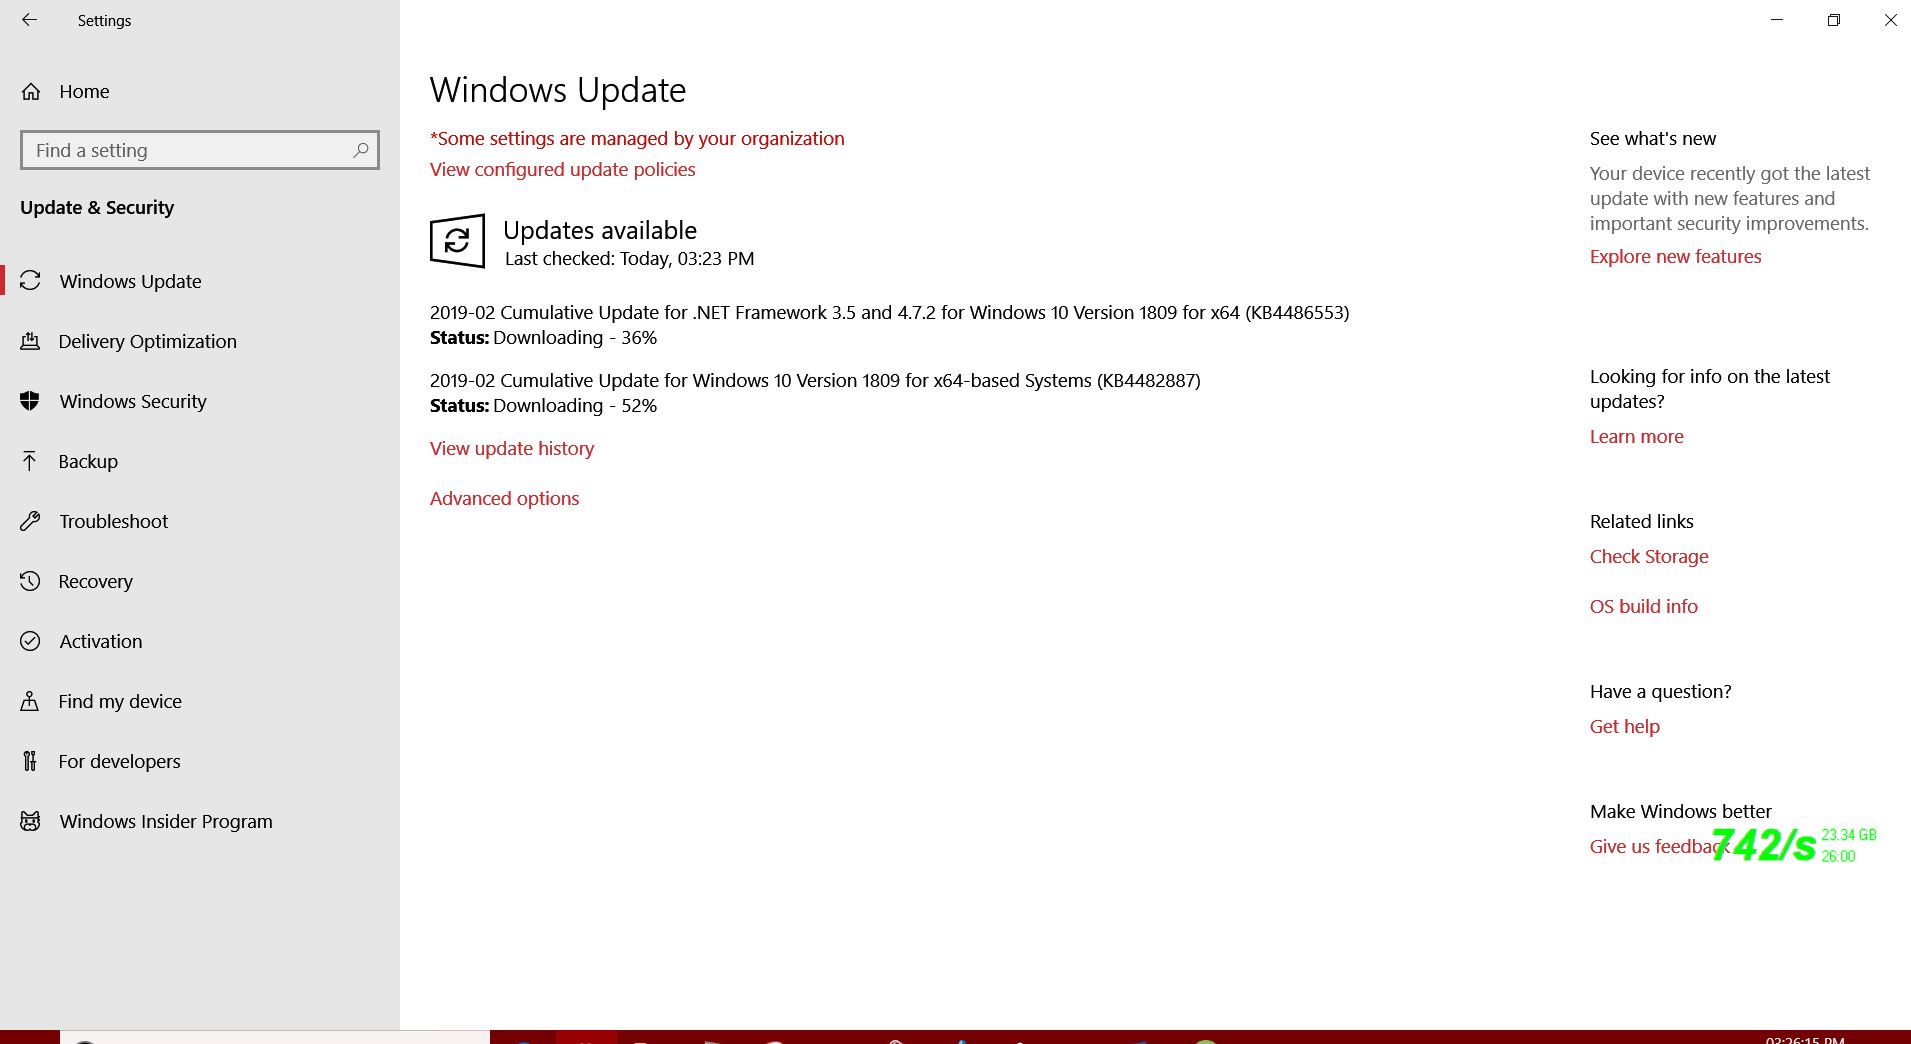 WINDOWS UPDATE RELEASED CLU KB4482887 TO WINDOWS 10 1809 AND WINDOWS SERVER 2019 ON 01-03-2019 e689d406-7e26-49cb-8c78-2fa08d5f7a62?upload=true.jpg